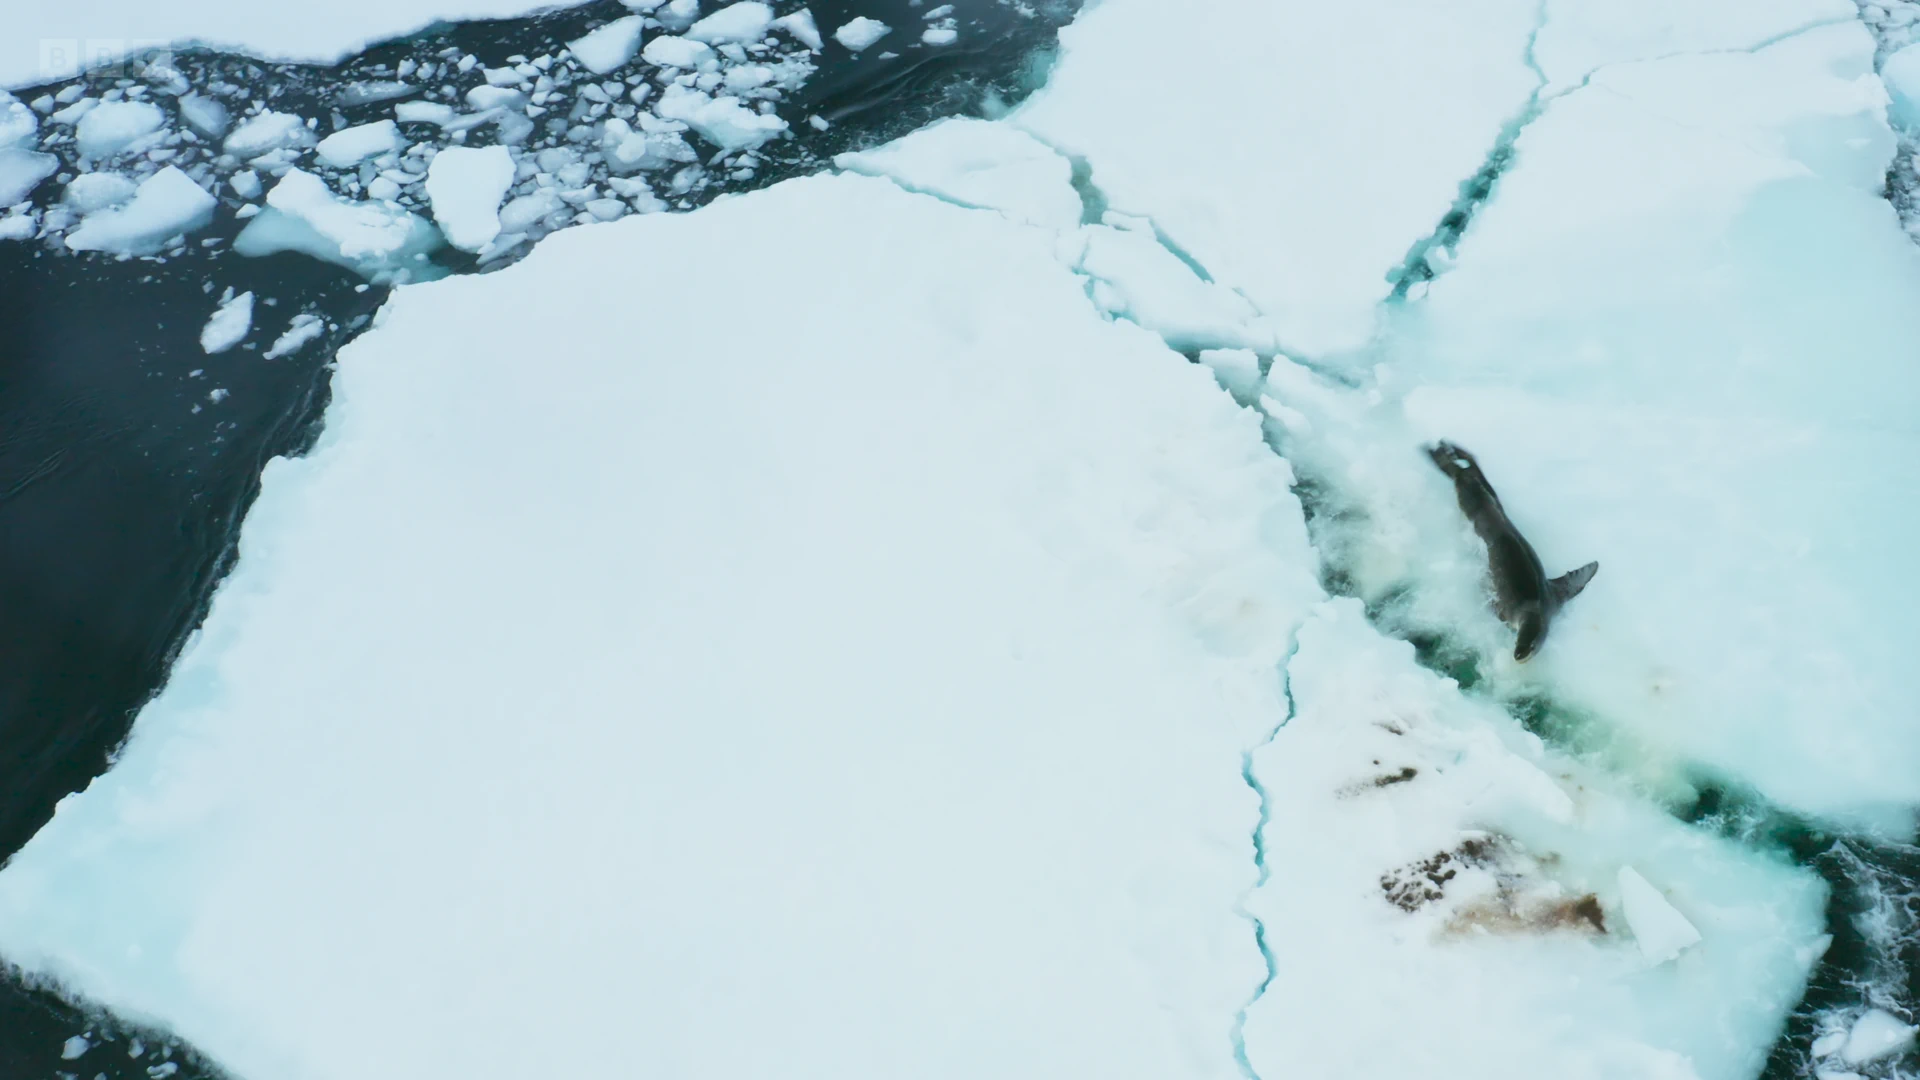 Leopard seal (Hydrurga leptonyx) as shown in Frozen Planet II - Frozen South